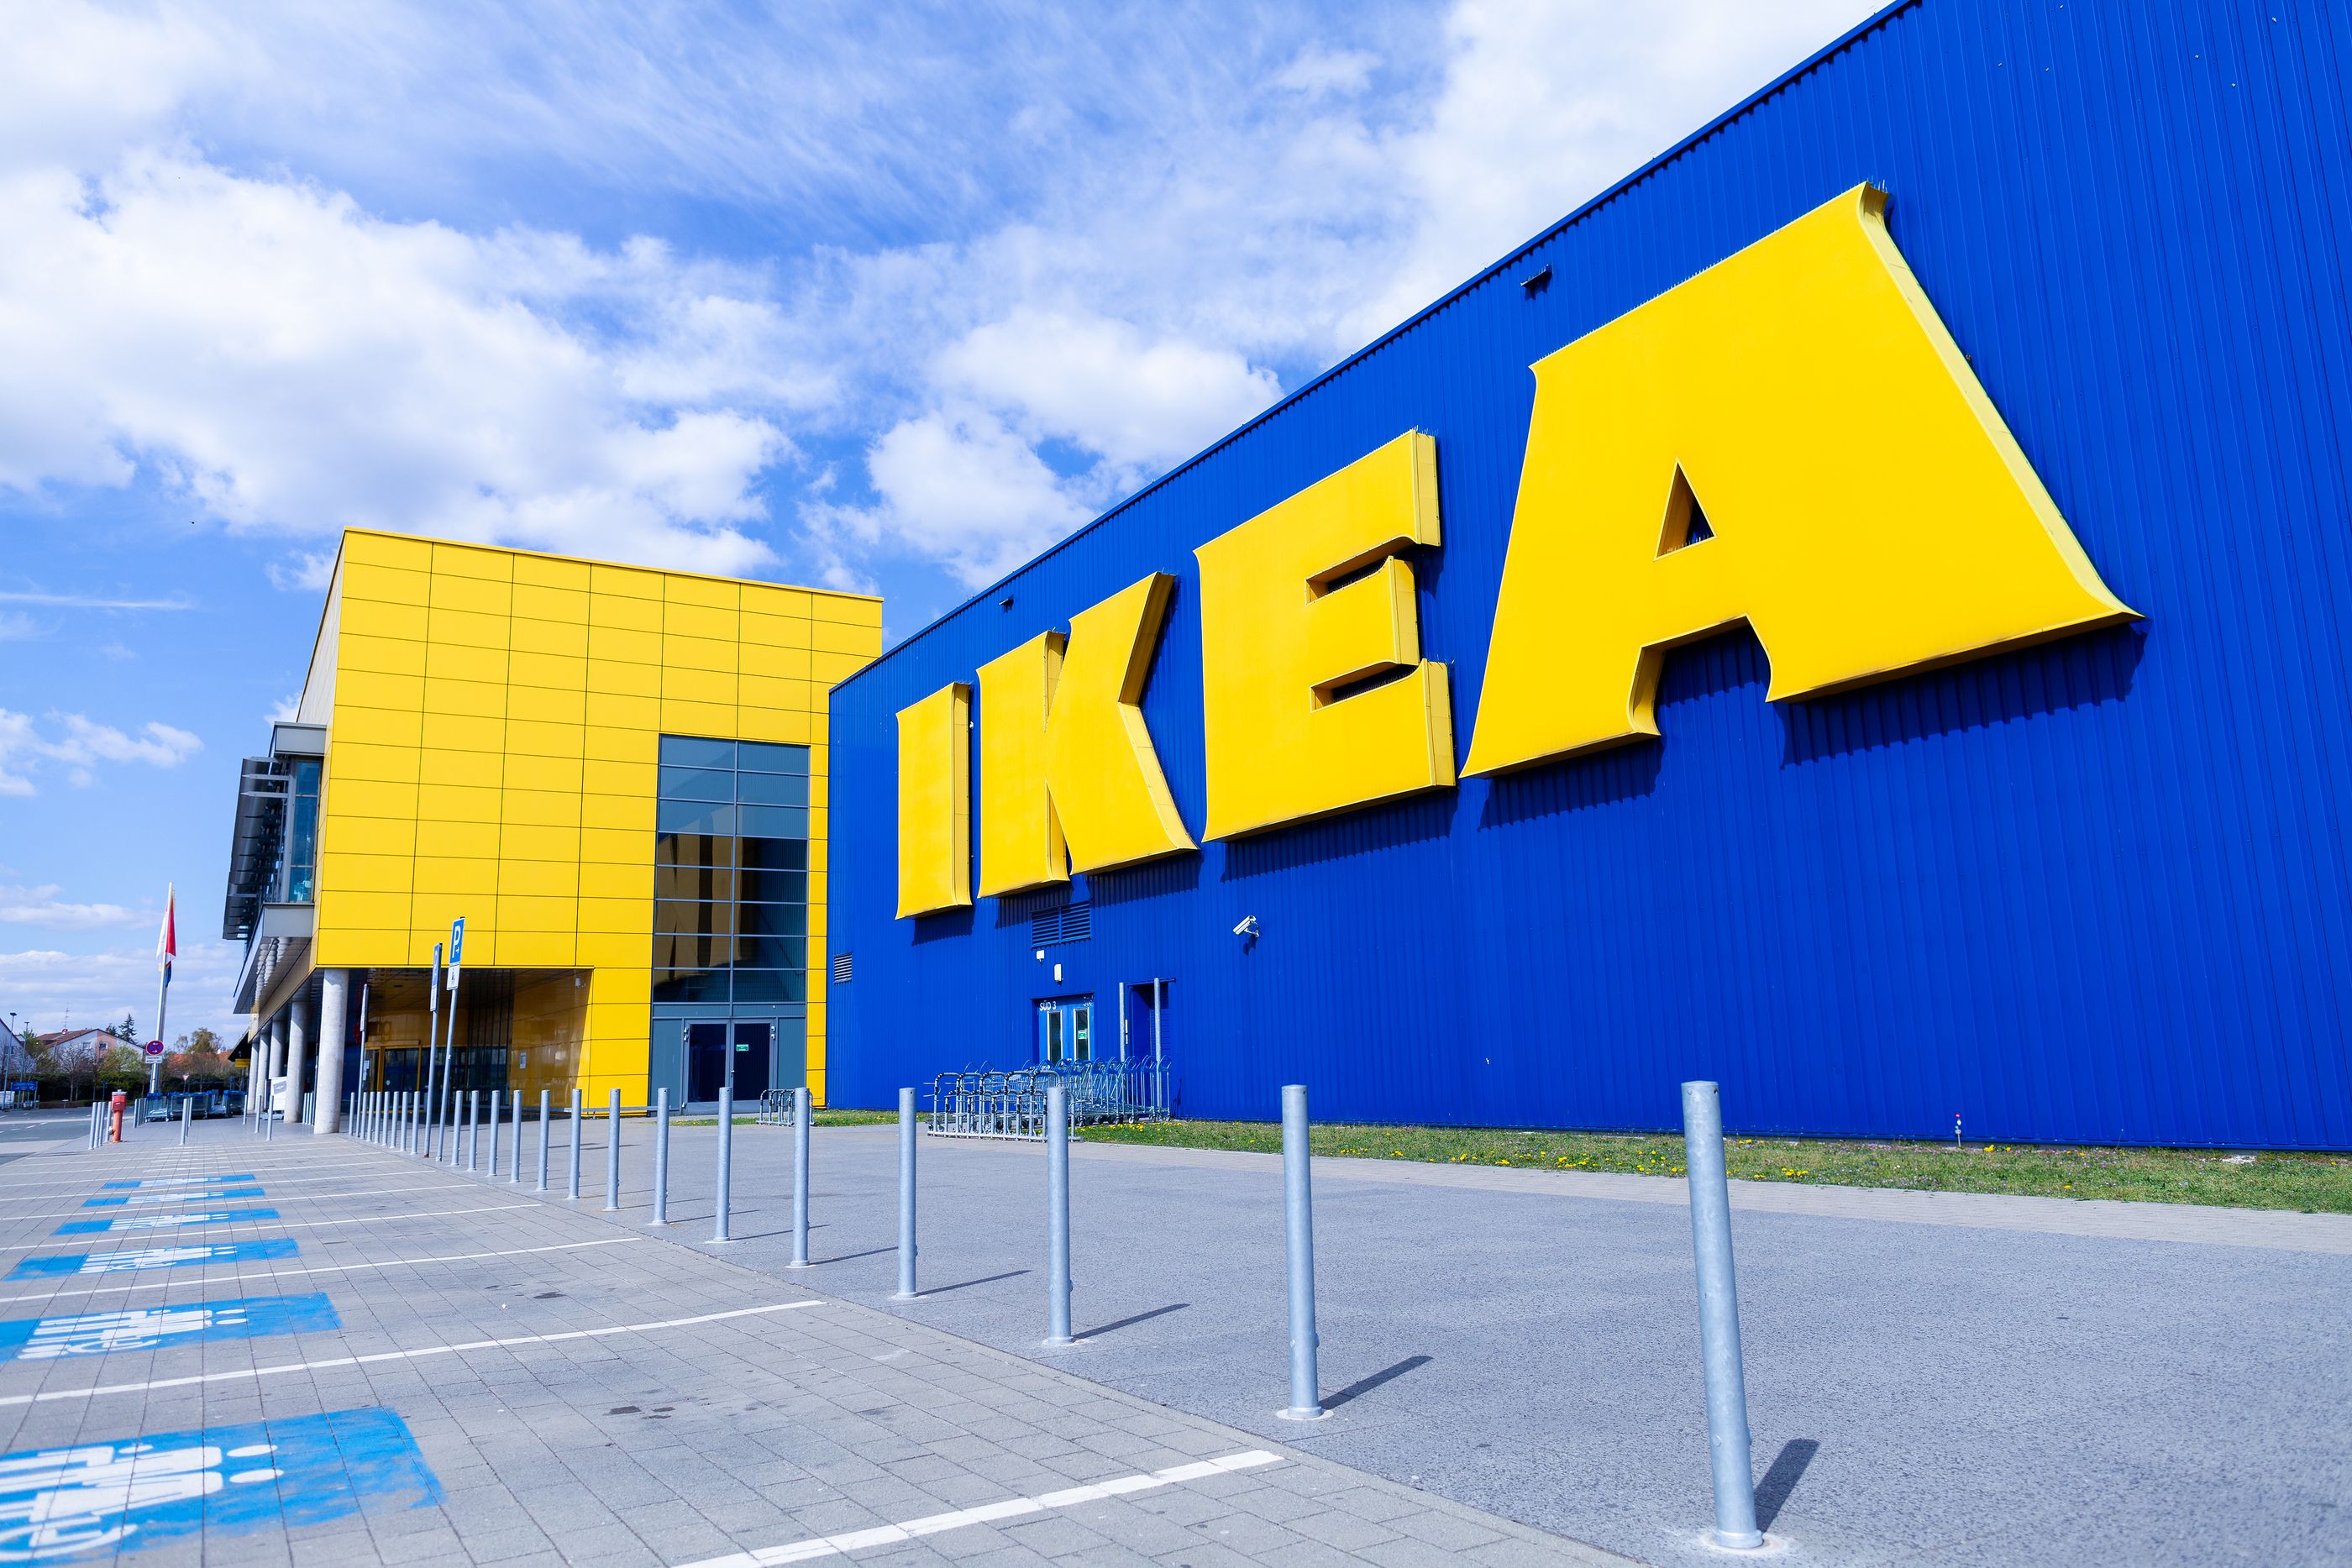 Ikea pagará 46 millones de dólares a la familia de un niño que murió aplastado por una cómoda